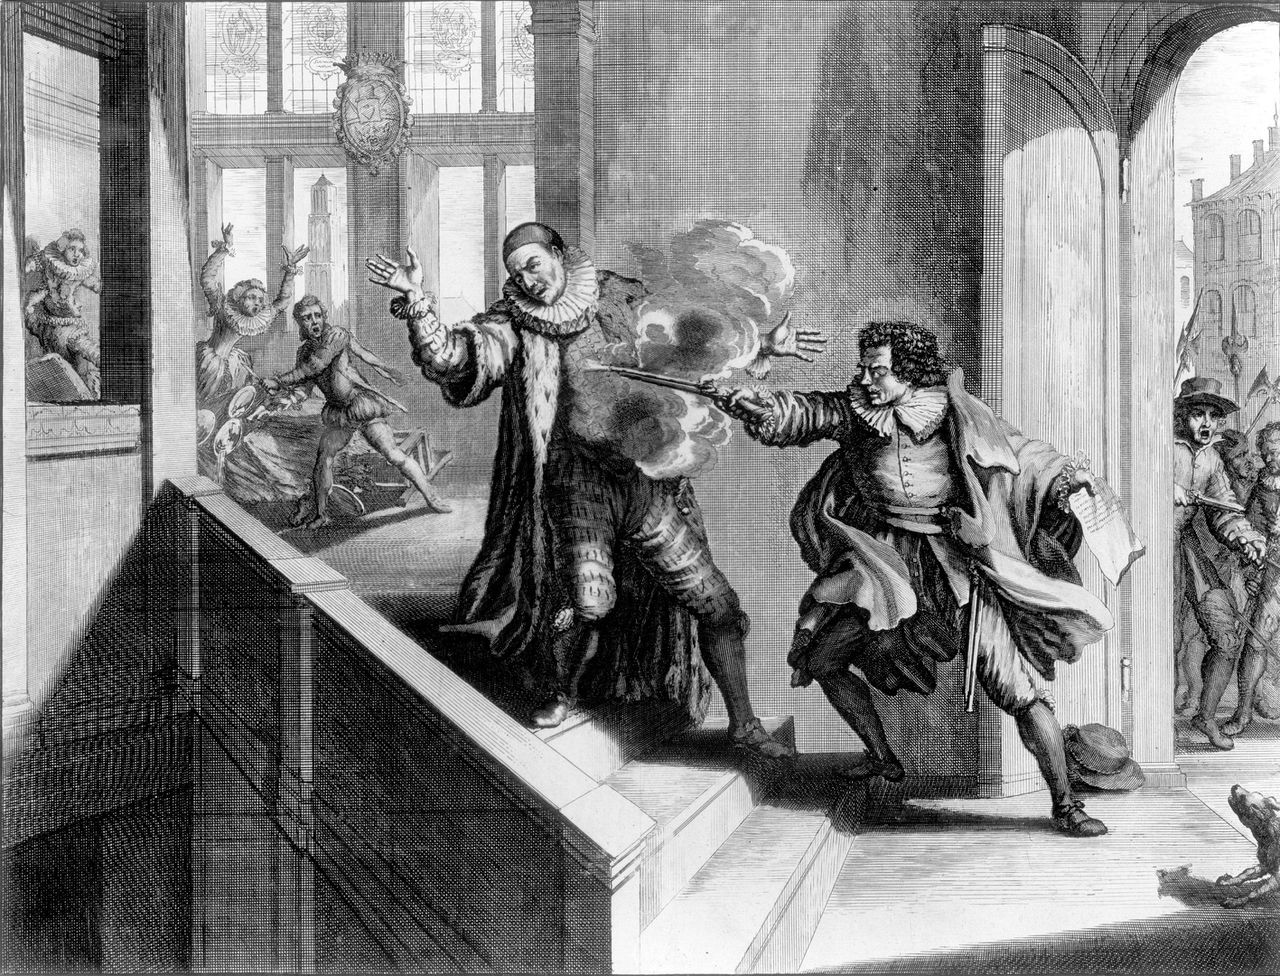 Op 10 juli 1584 wordt prins Willem I van Oranje - de Vader des Vaderlands - in het Prinsenhof in Delft vermoord door Balthasar Gerards. Het land is in diepe rouw. FOTO: Spaarnestad Photo / HOLLANDSE HOOGTE